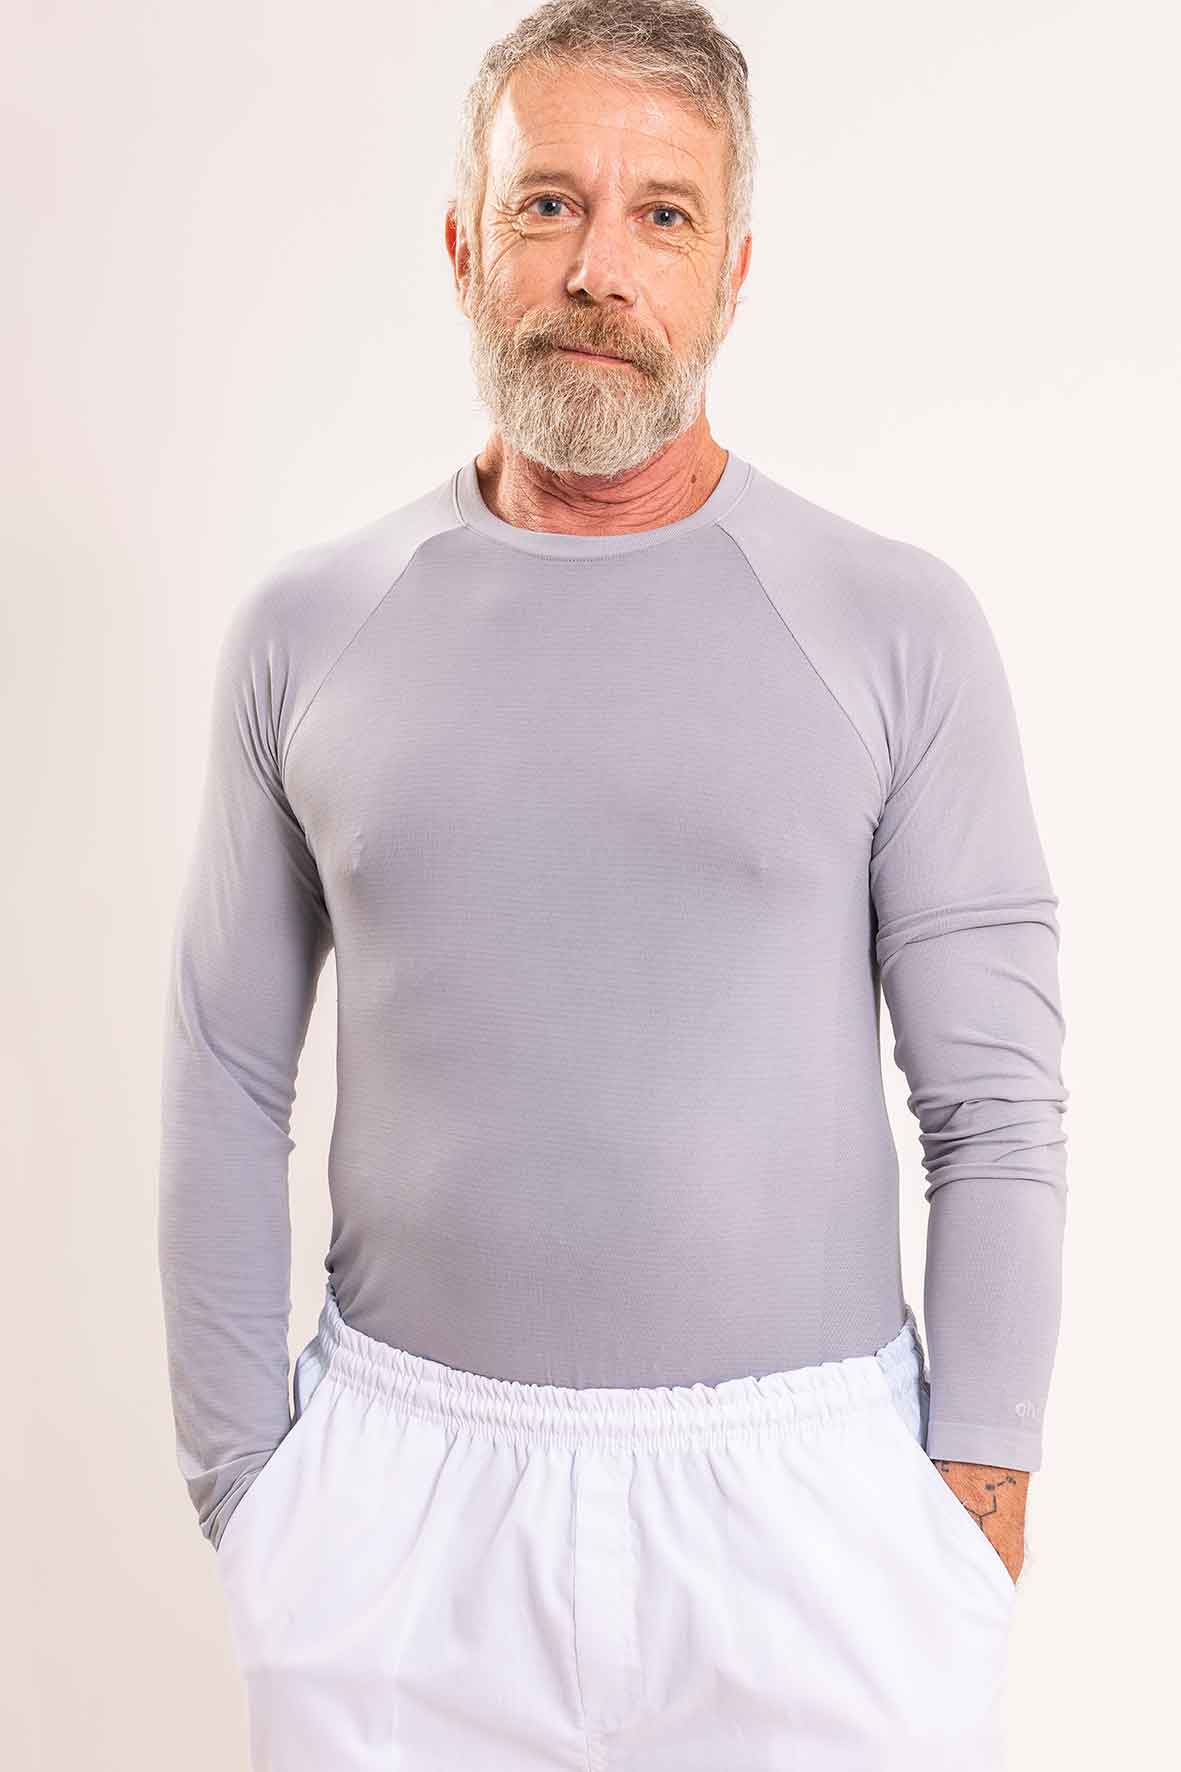 Camiseta térmica gris (hombre) - Oh! Wear